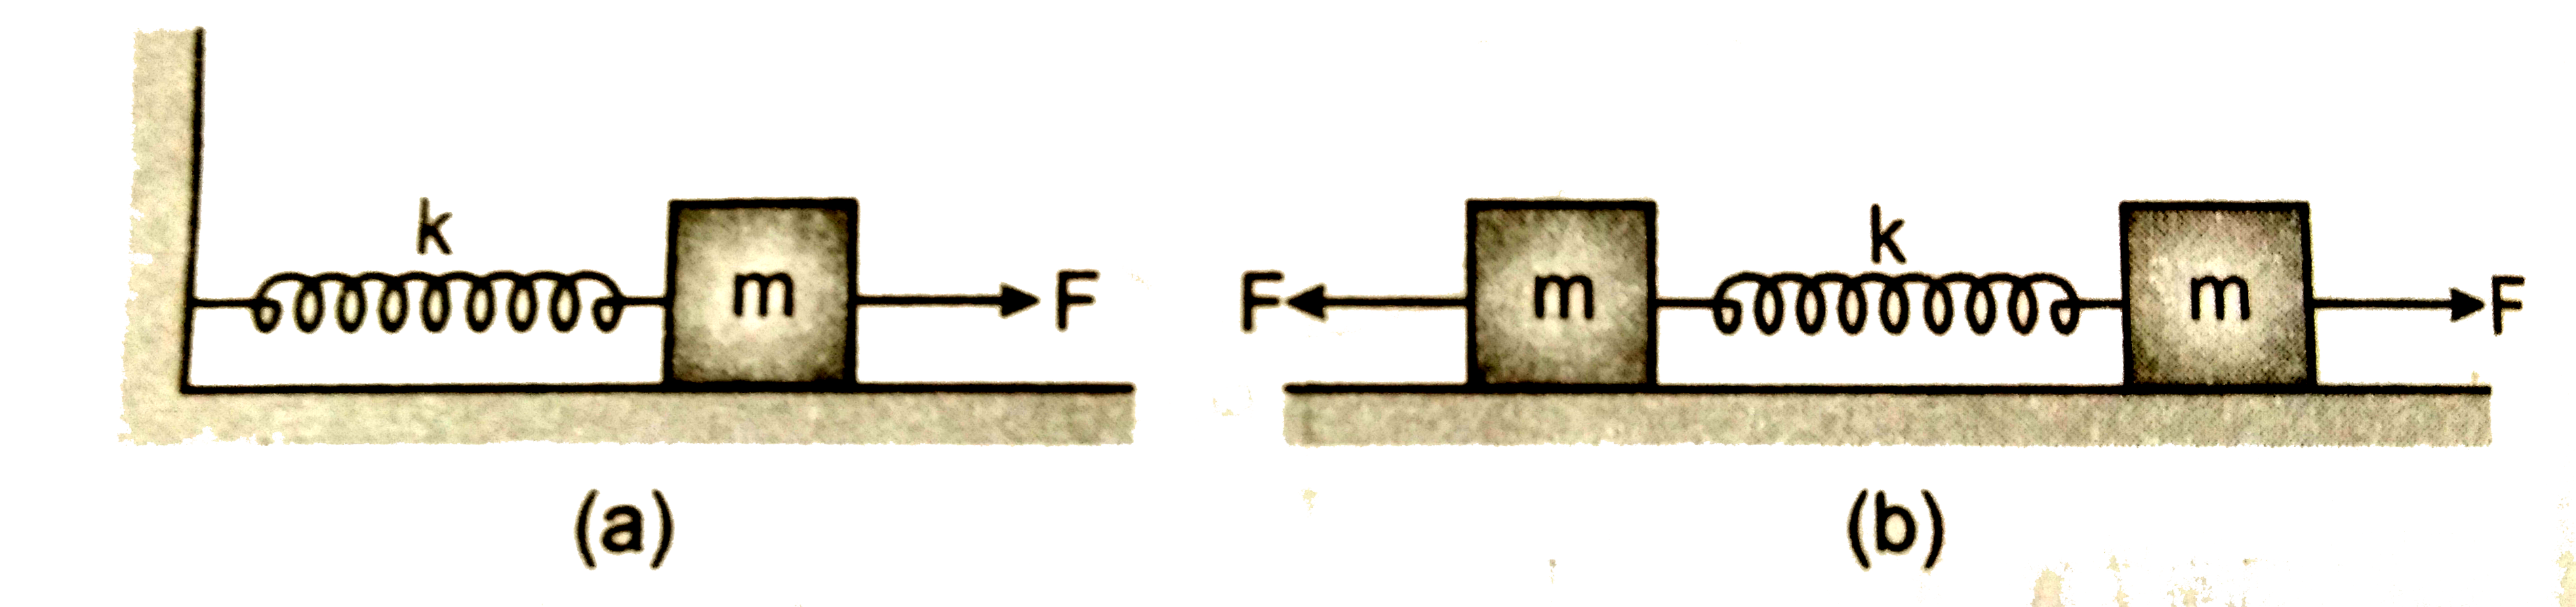 चित्र(a ) में k बल - स्थिरांक कि किसी कमानी के एक सिरे को किसी दृढ़ आधार से जकड़ा तथा  दूसरे मुक्त सिरे से एक द्रव्यमान m जुड़ा दर्शाया गया है । कमानी के मुक्त सिरे पर बल F  आरोपित करने से कमानी तन जाती है । चित्र ( b) में उसी कमानी के दोनों मुक्त सिरों से द्रव्यमान m जुड़ा दर्शाया गया है कमानी के दोनों सिरों  को चित्र  में समान  बल F  द्वारा तनित किया गया है ।          (i) दोनों प्रकरणों में कमानी का अधिकतम विस्तार क्या है ?     ( ii) यदि (a ) का द्रव्यमान तथा (b ) के दोनों द्रव्यमानो को मुक्त छोड़ दिया जाता , तो प्रत्येक प्रकरण में दोलन का आवर्तकाल ज्ञात कीजिए।